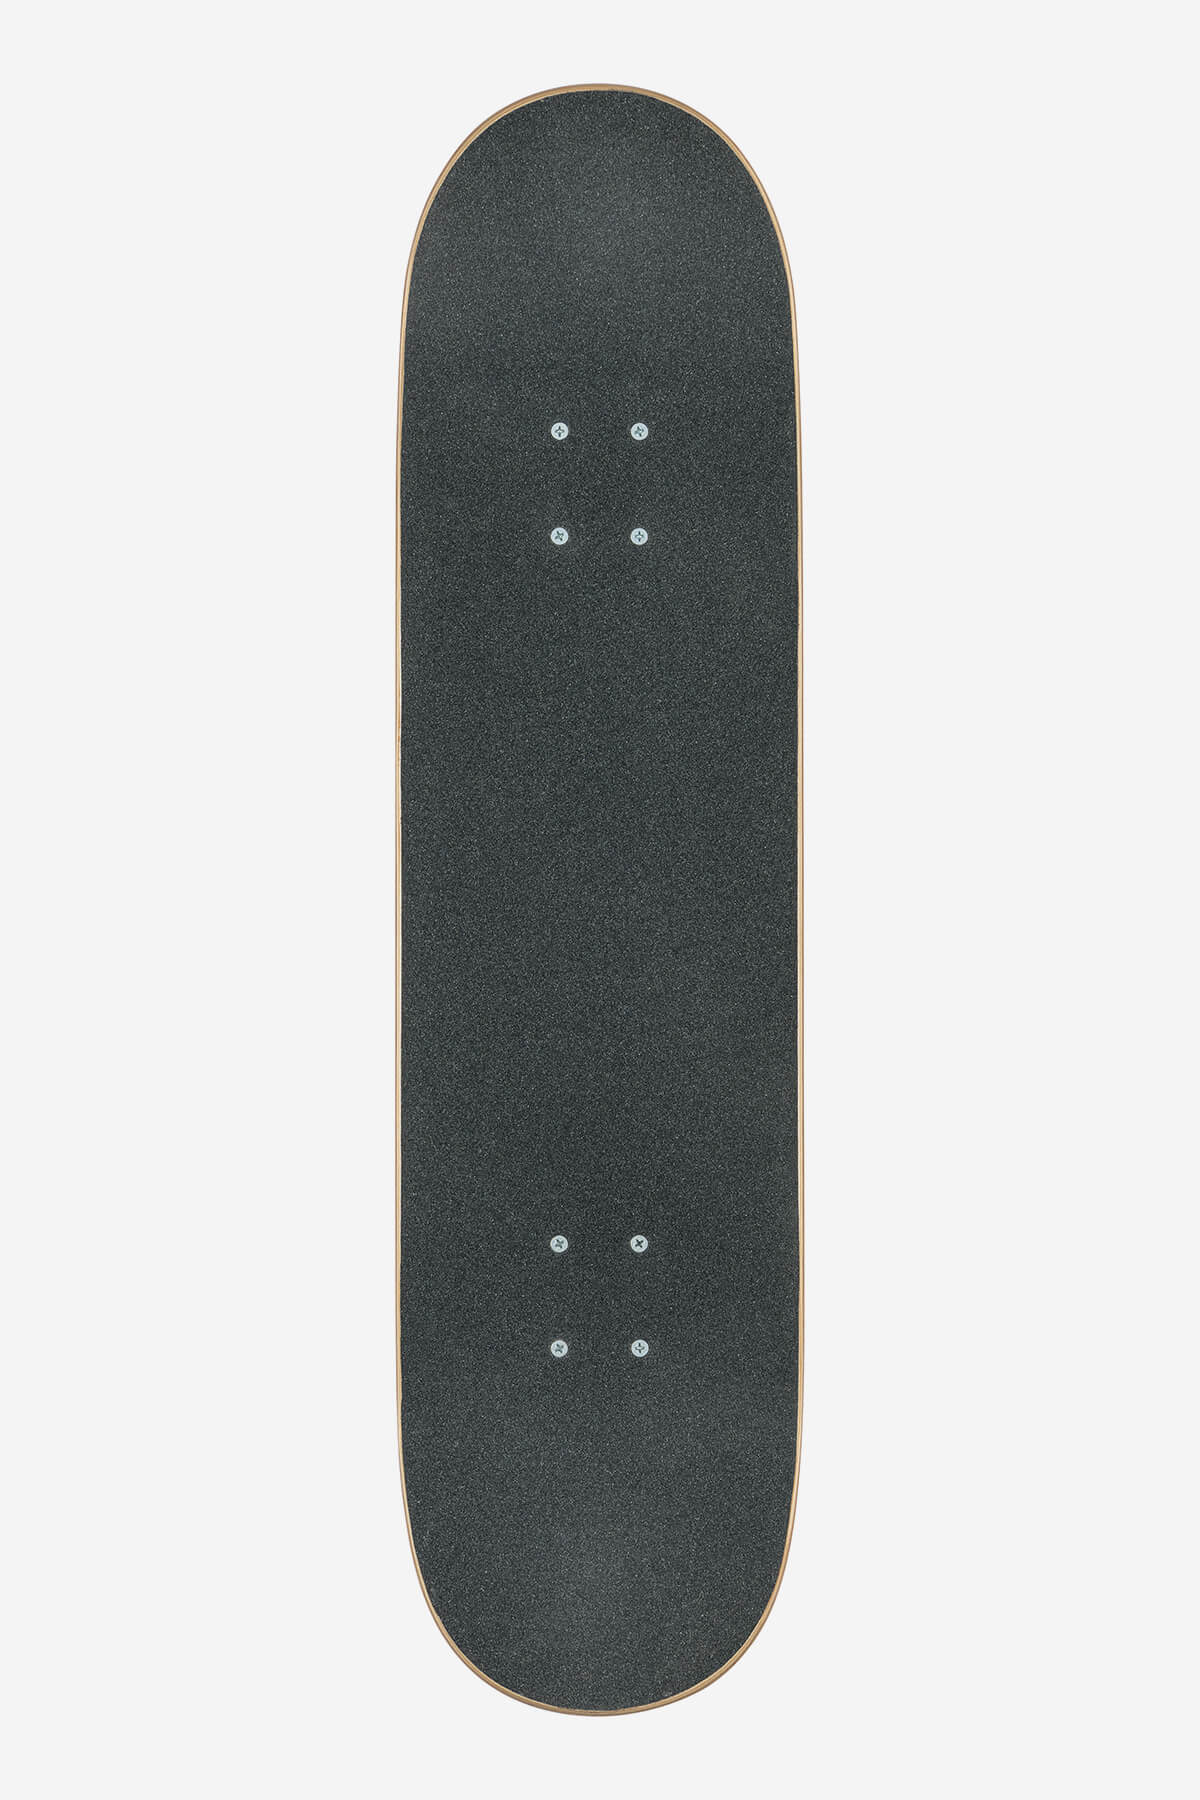 Globe - G0 Fubar - Red/White - 8.25" complet Skateboard